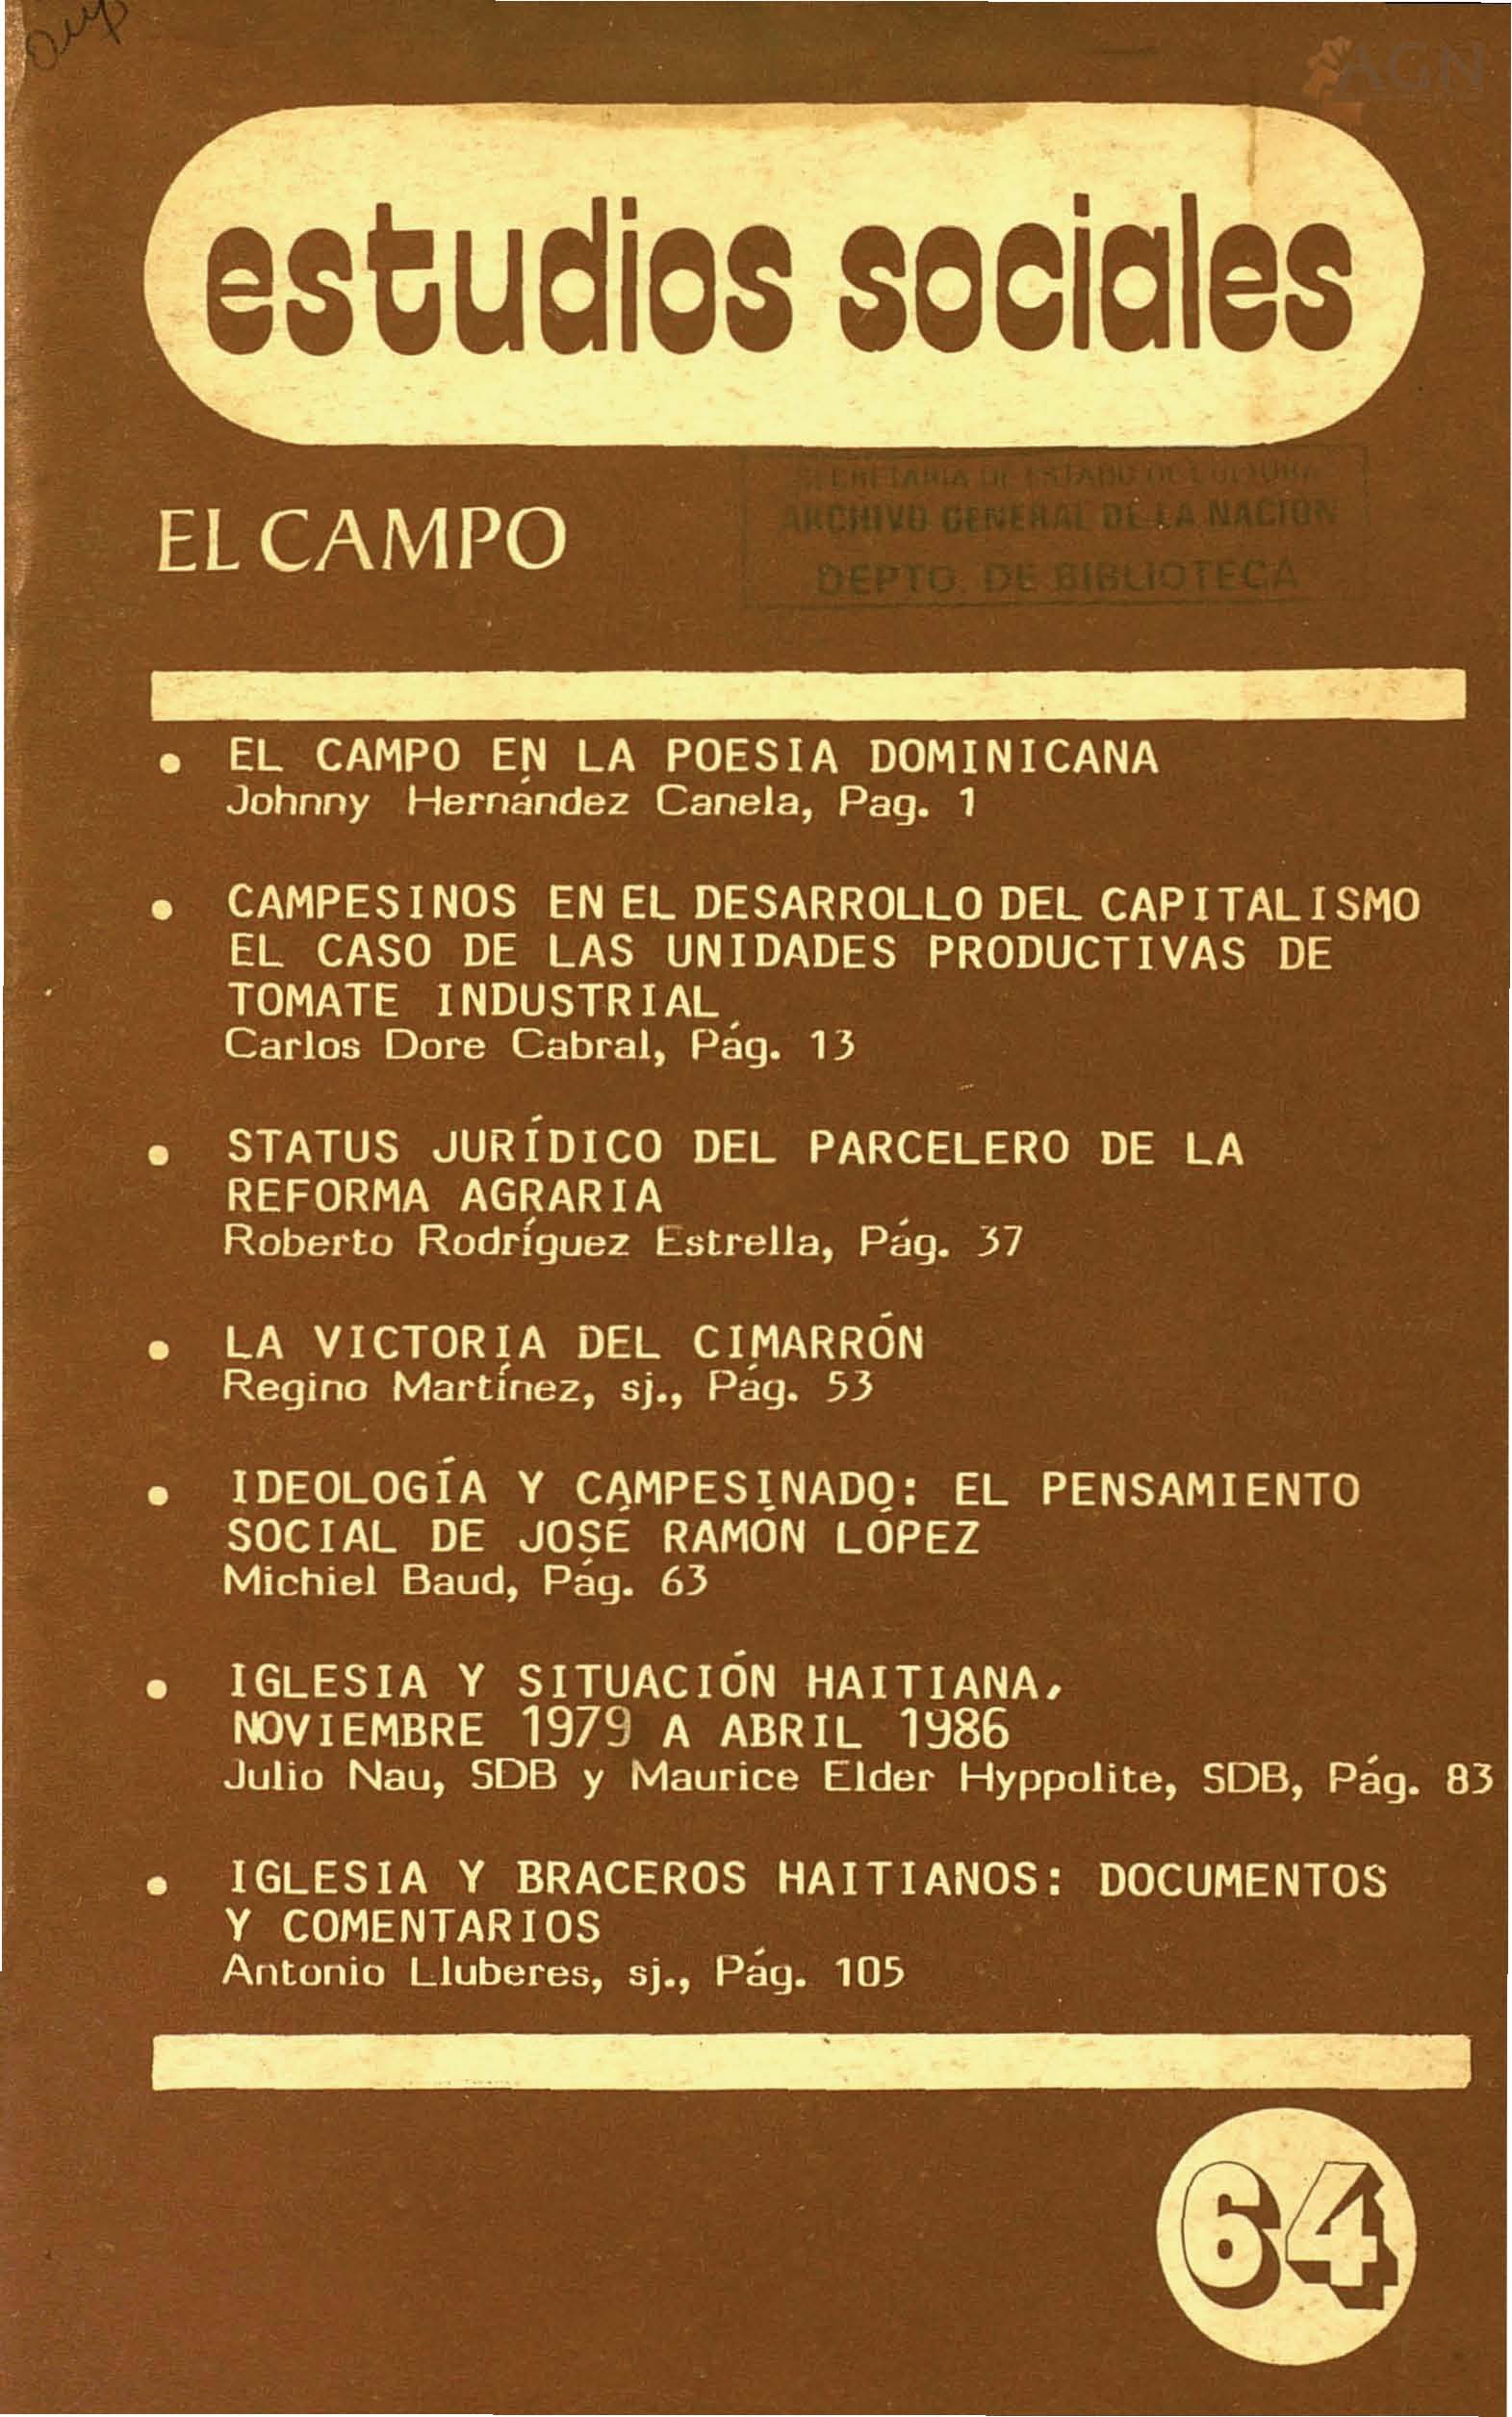 						Ver Vol. 19 Núm. 64 (1986): El Campo
					